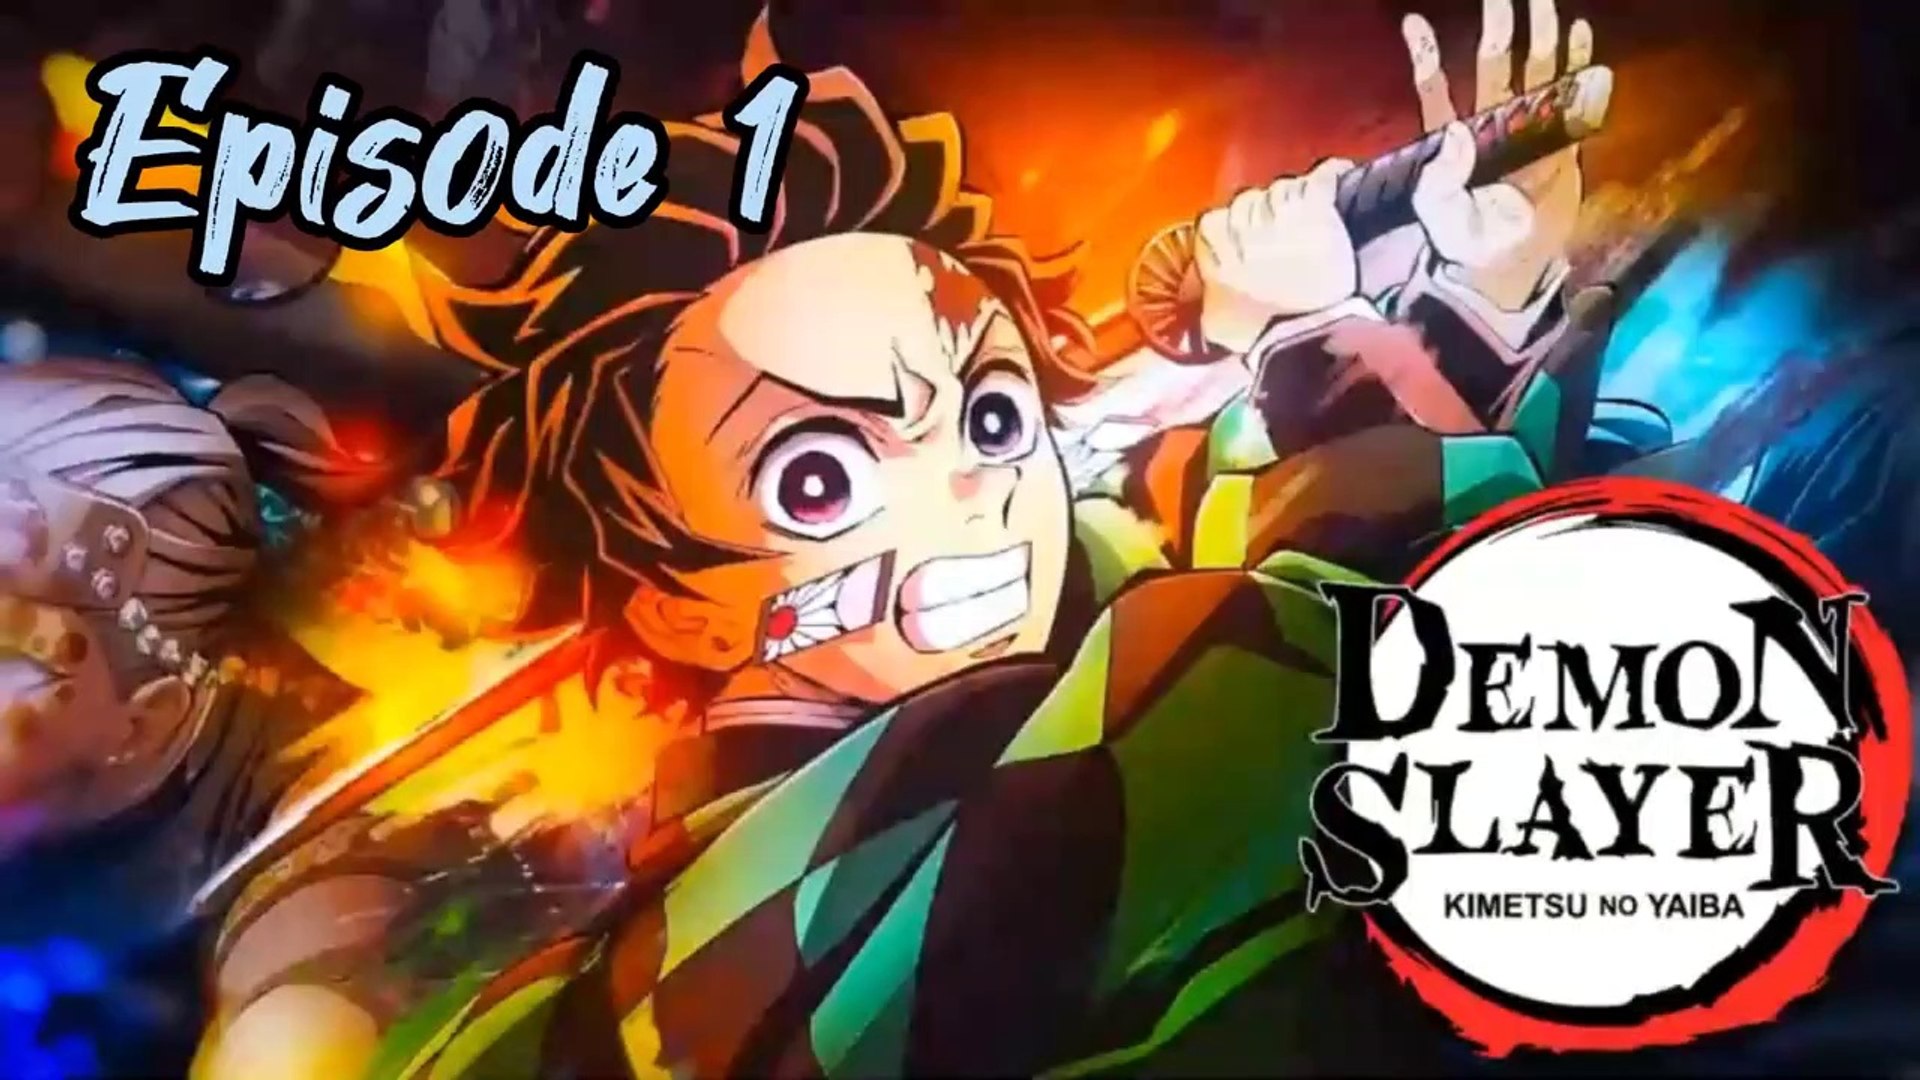 Demon Slayer: Kimetsu no Yaiba Season 1 Episode 1 Recap - Cruelty